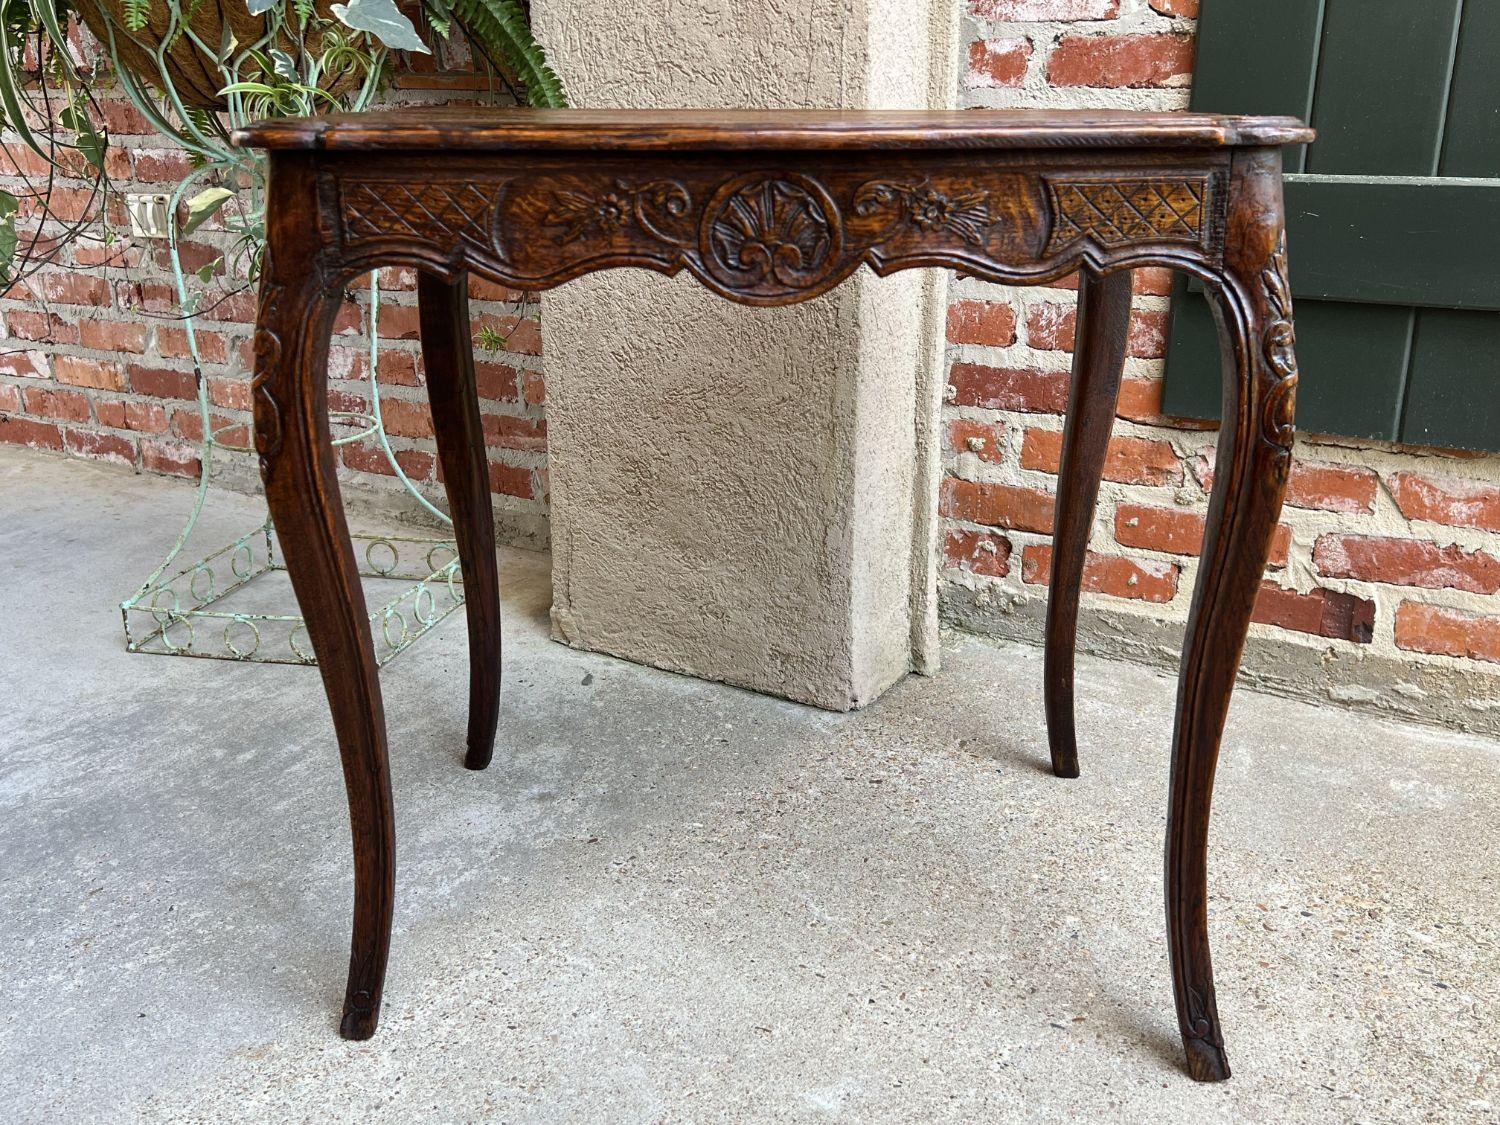 Antike Französisch geschnitzt Eiche Sofa Seite Lampe Tisch Serpentine Louis XV Nachttisch.

Direkt aus Frankreich, ein weiterer schöner geschnitzter französischer Beistell- oder Sofatisch im klassischen französischen Louis XV-Stil und mit